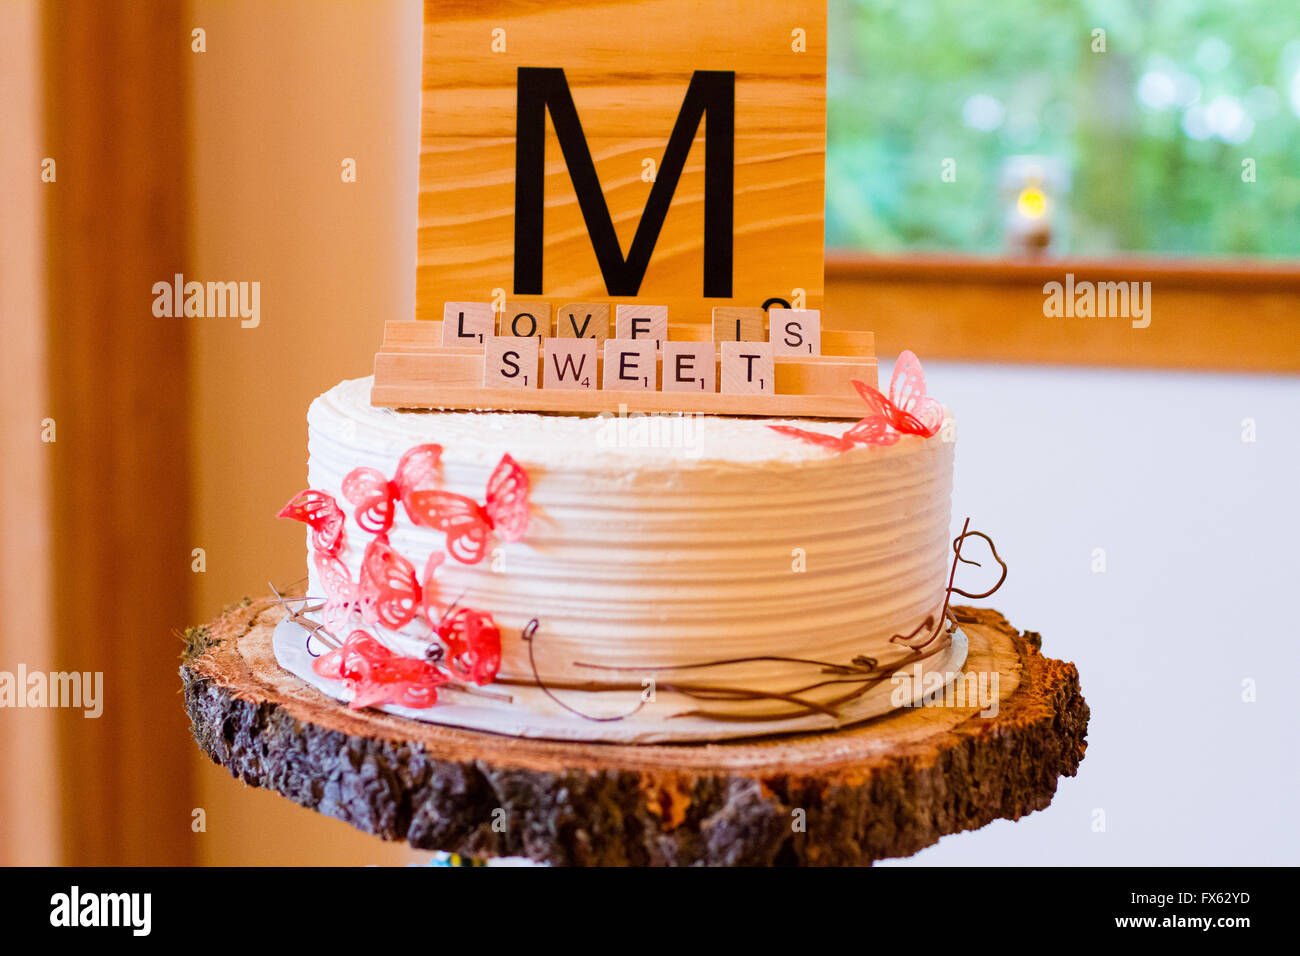 Scrabble-Buchstaben bei einer Hochzeitsfeier dienen als Dekoration zu buchstabieren die Worte Liebe süß ist. Stockfoto